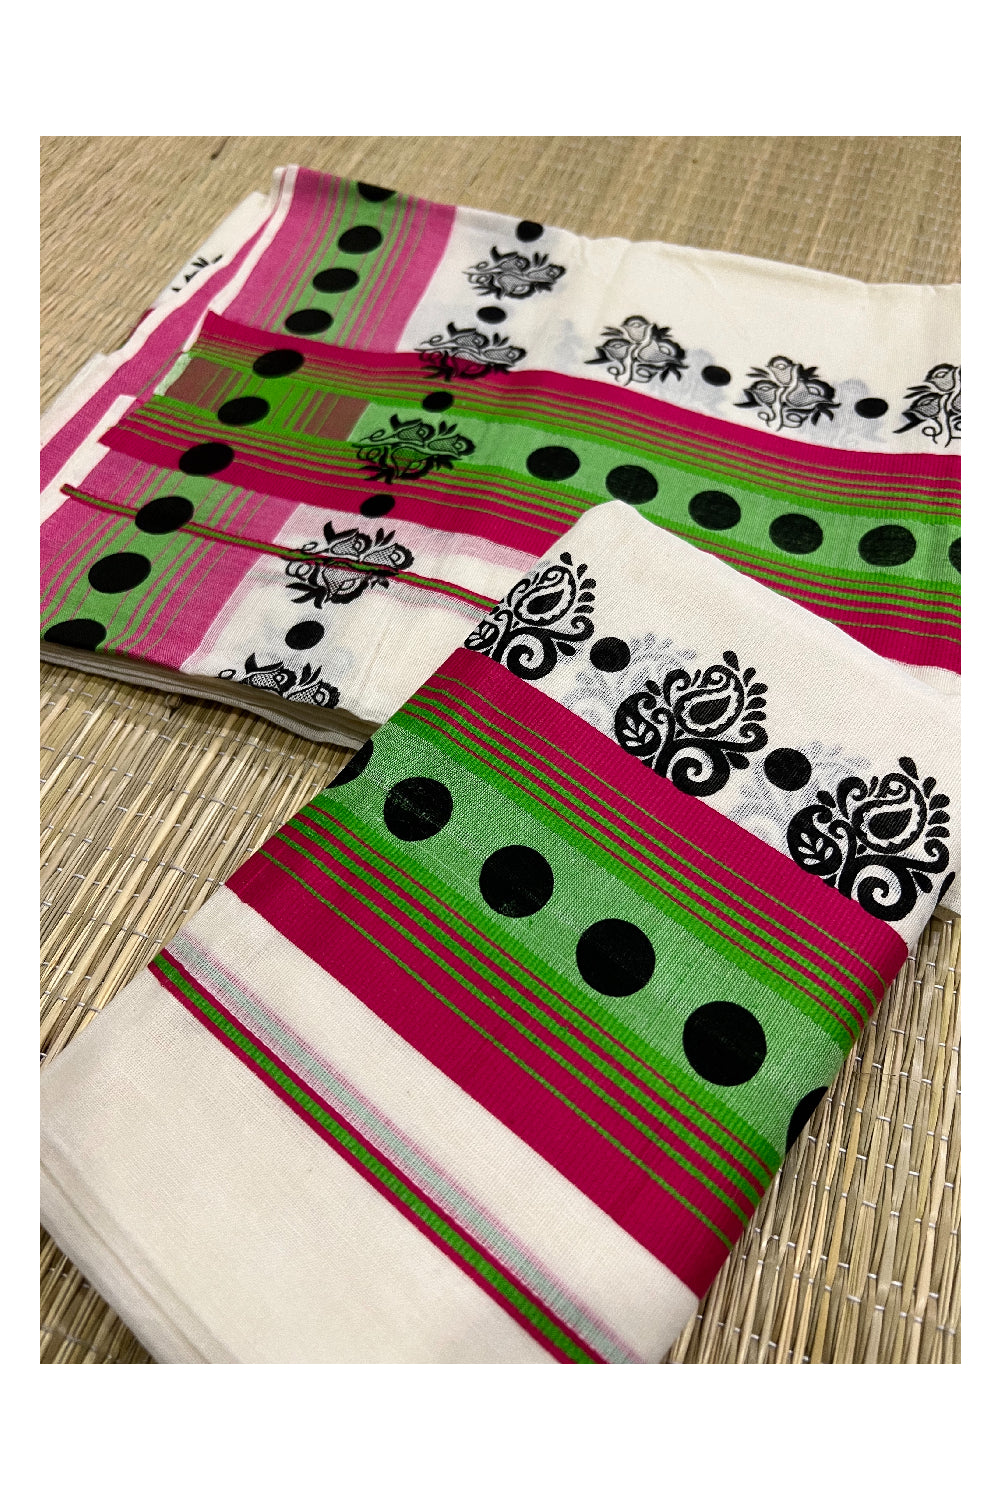 Kerala Cotton Set Mundu (Mundum Neriyathum) with Black Floral Block Prints on Dark Pink Green Border